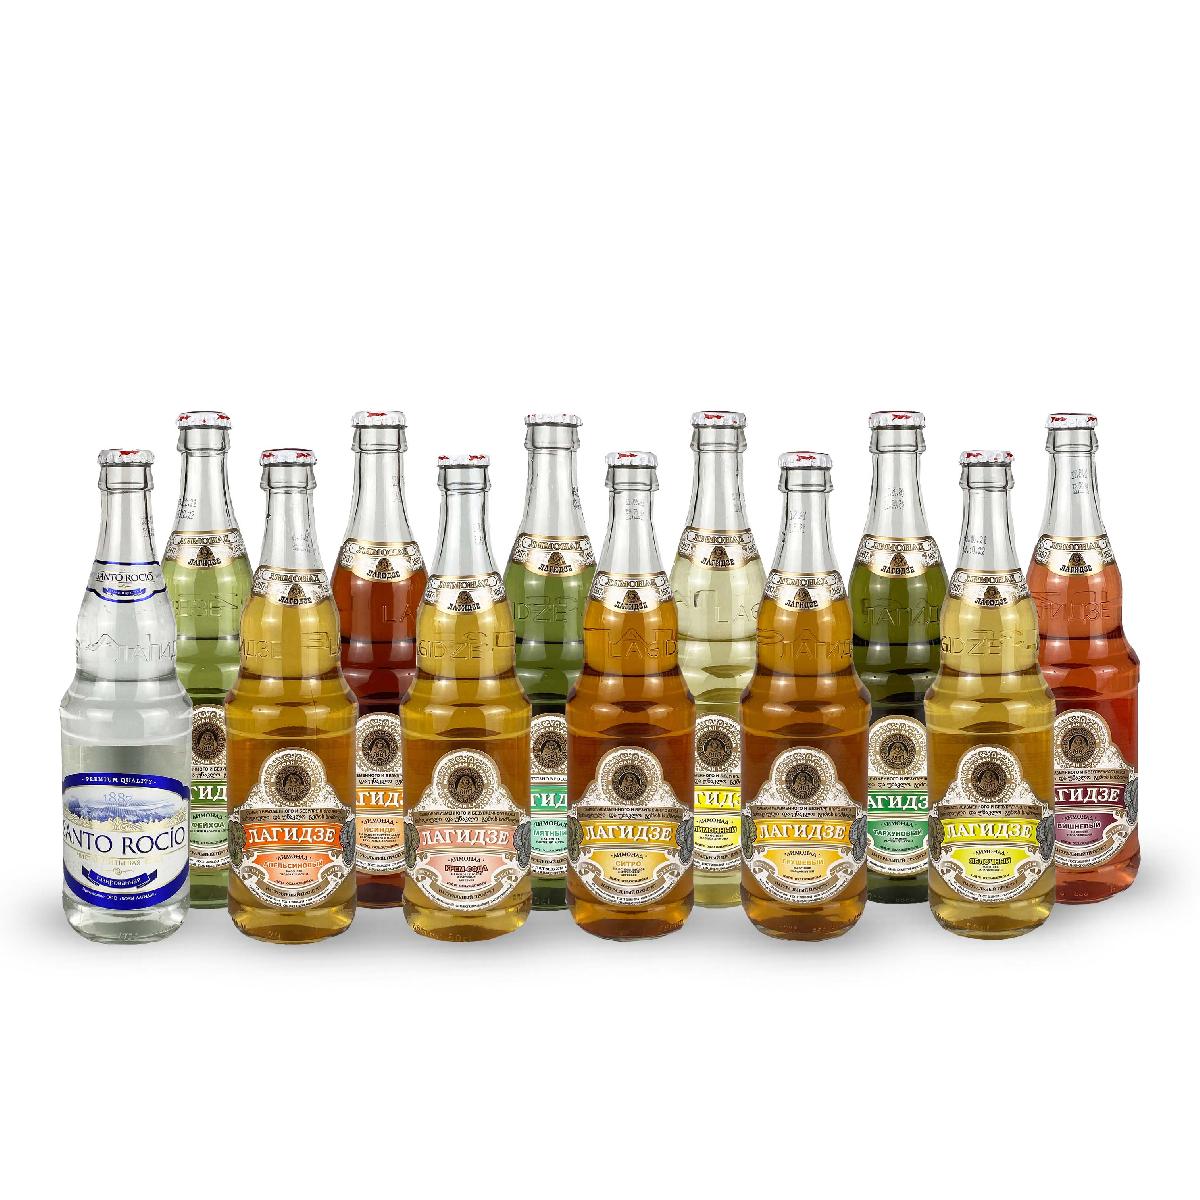 Лимонады Лагидзе набор 12 бутылок в стекле 0,5л (Тархун, Груша, Исинди, Крем-сода, Фейхоа, Яблоко, Л